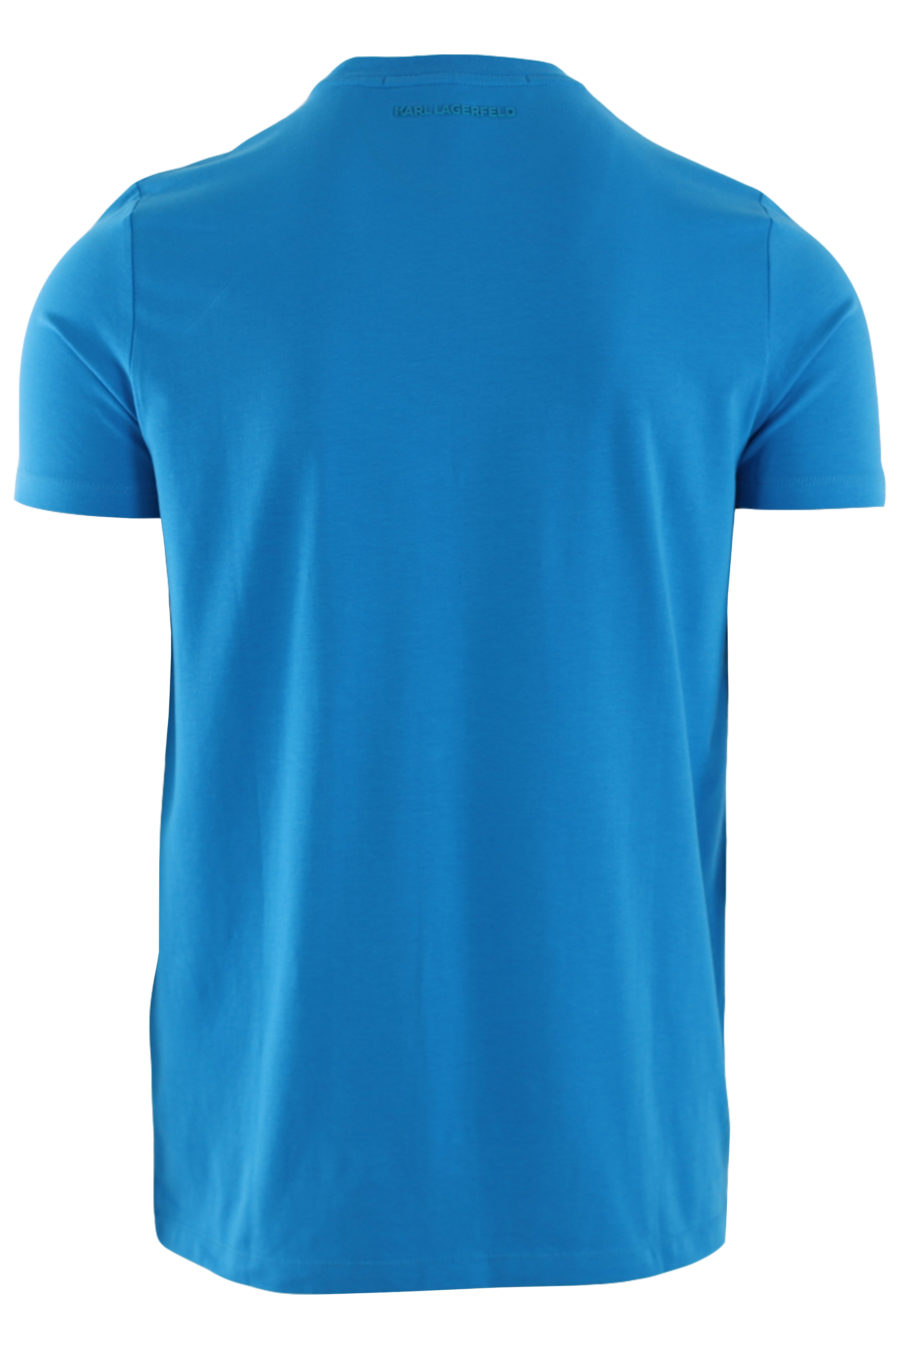 Camiseta azul con logo de goma pequeño - IMG 8744